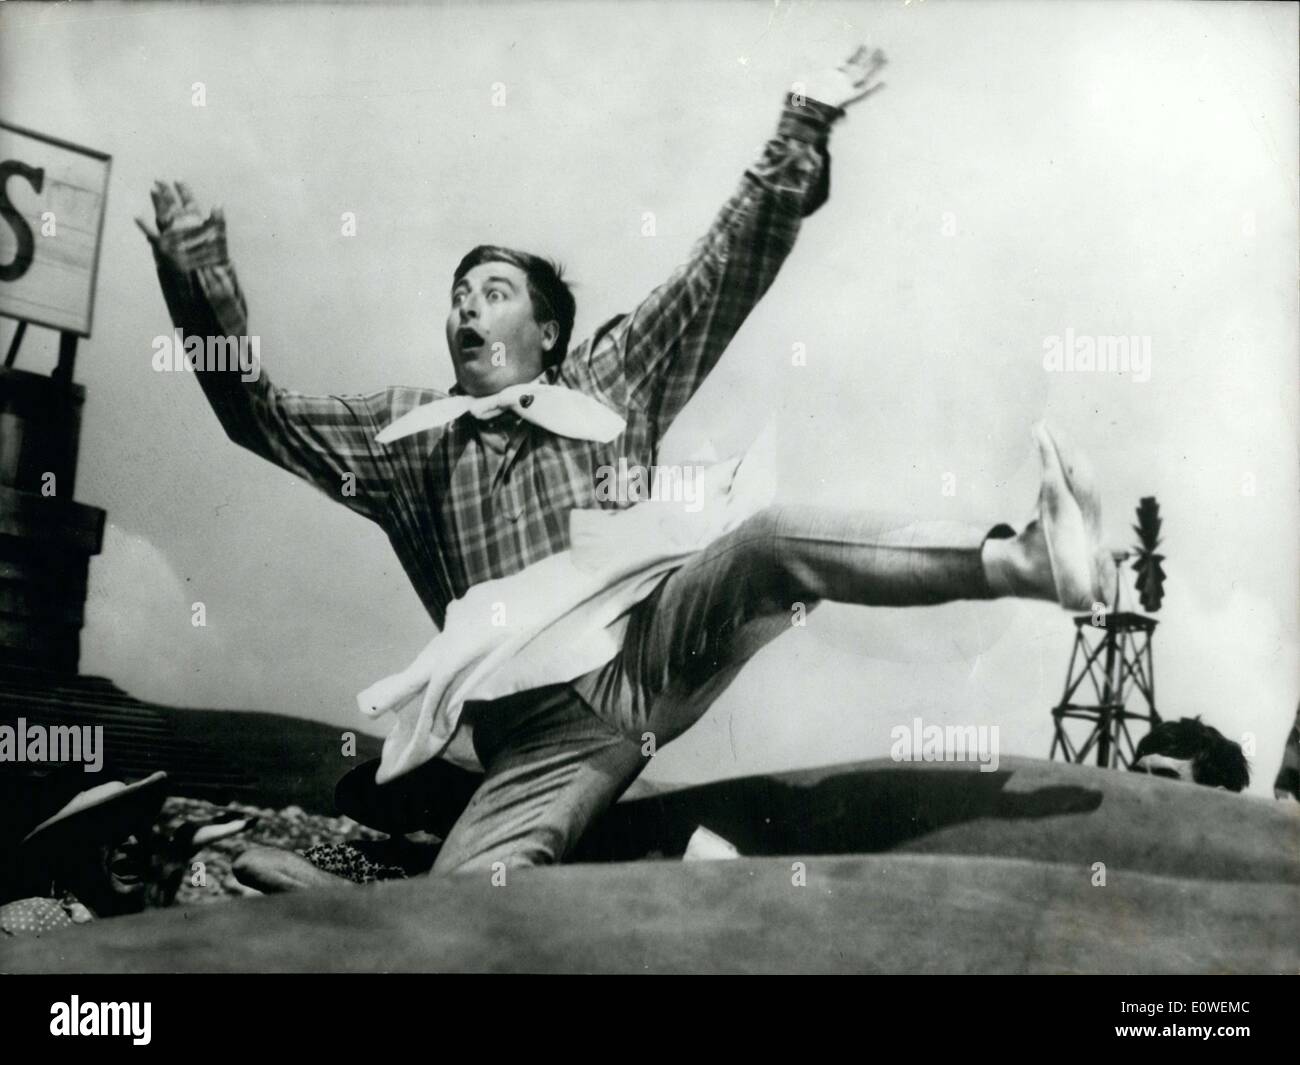 Lug. 31, 1962 - Robert Guez diretto il film, che è stato un successo per Tisot grazie al suo talento di cottura. Foto Stock